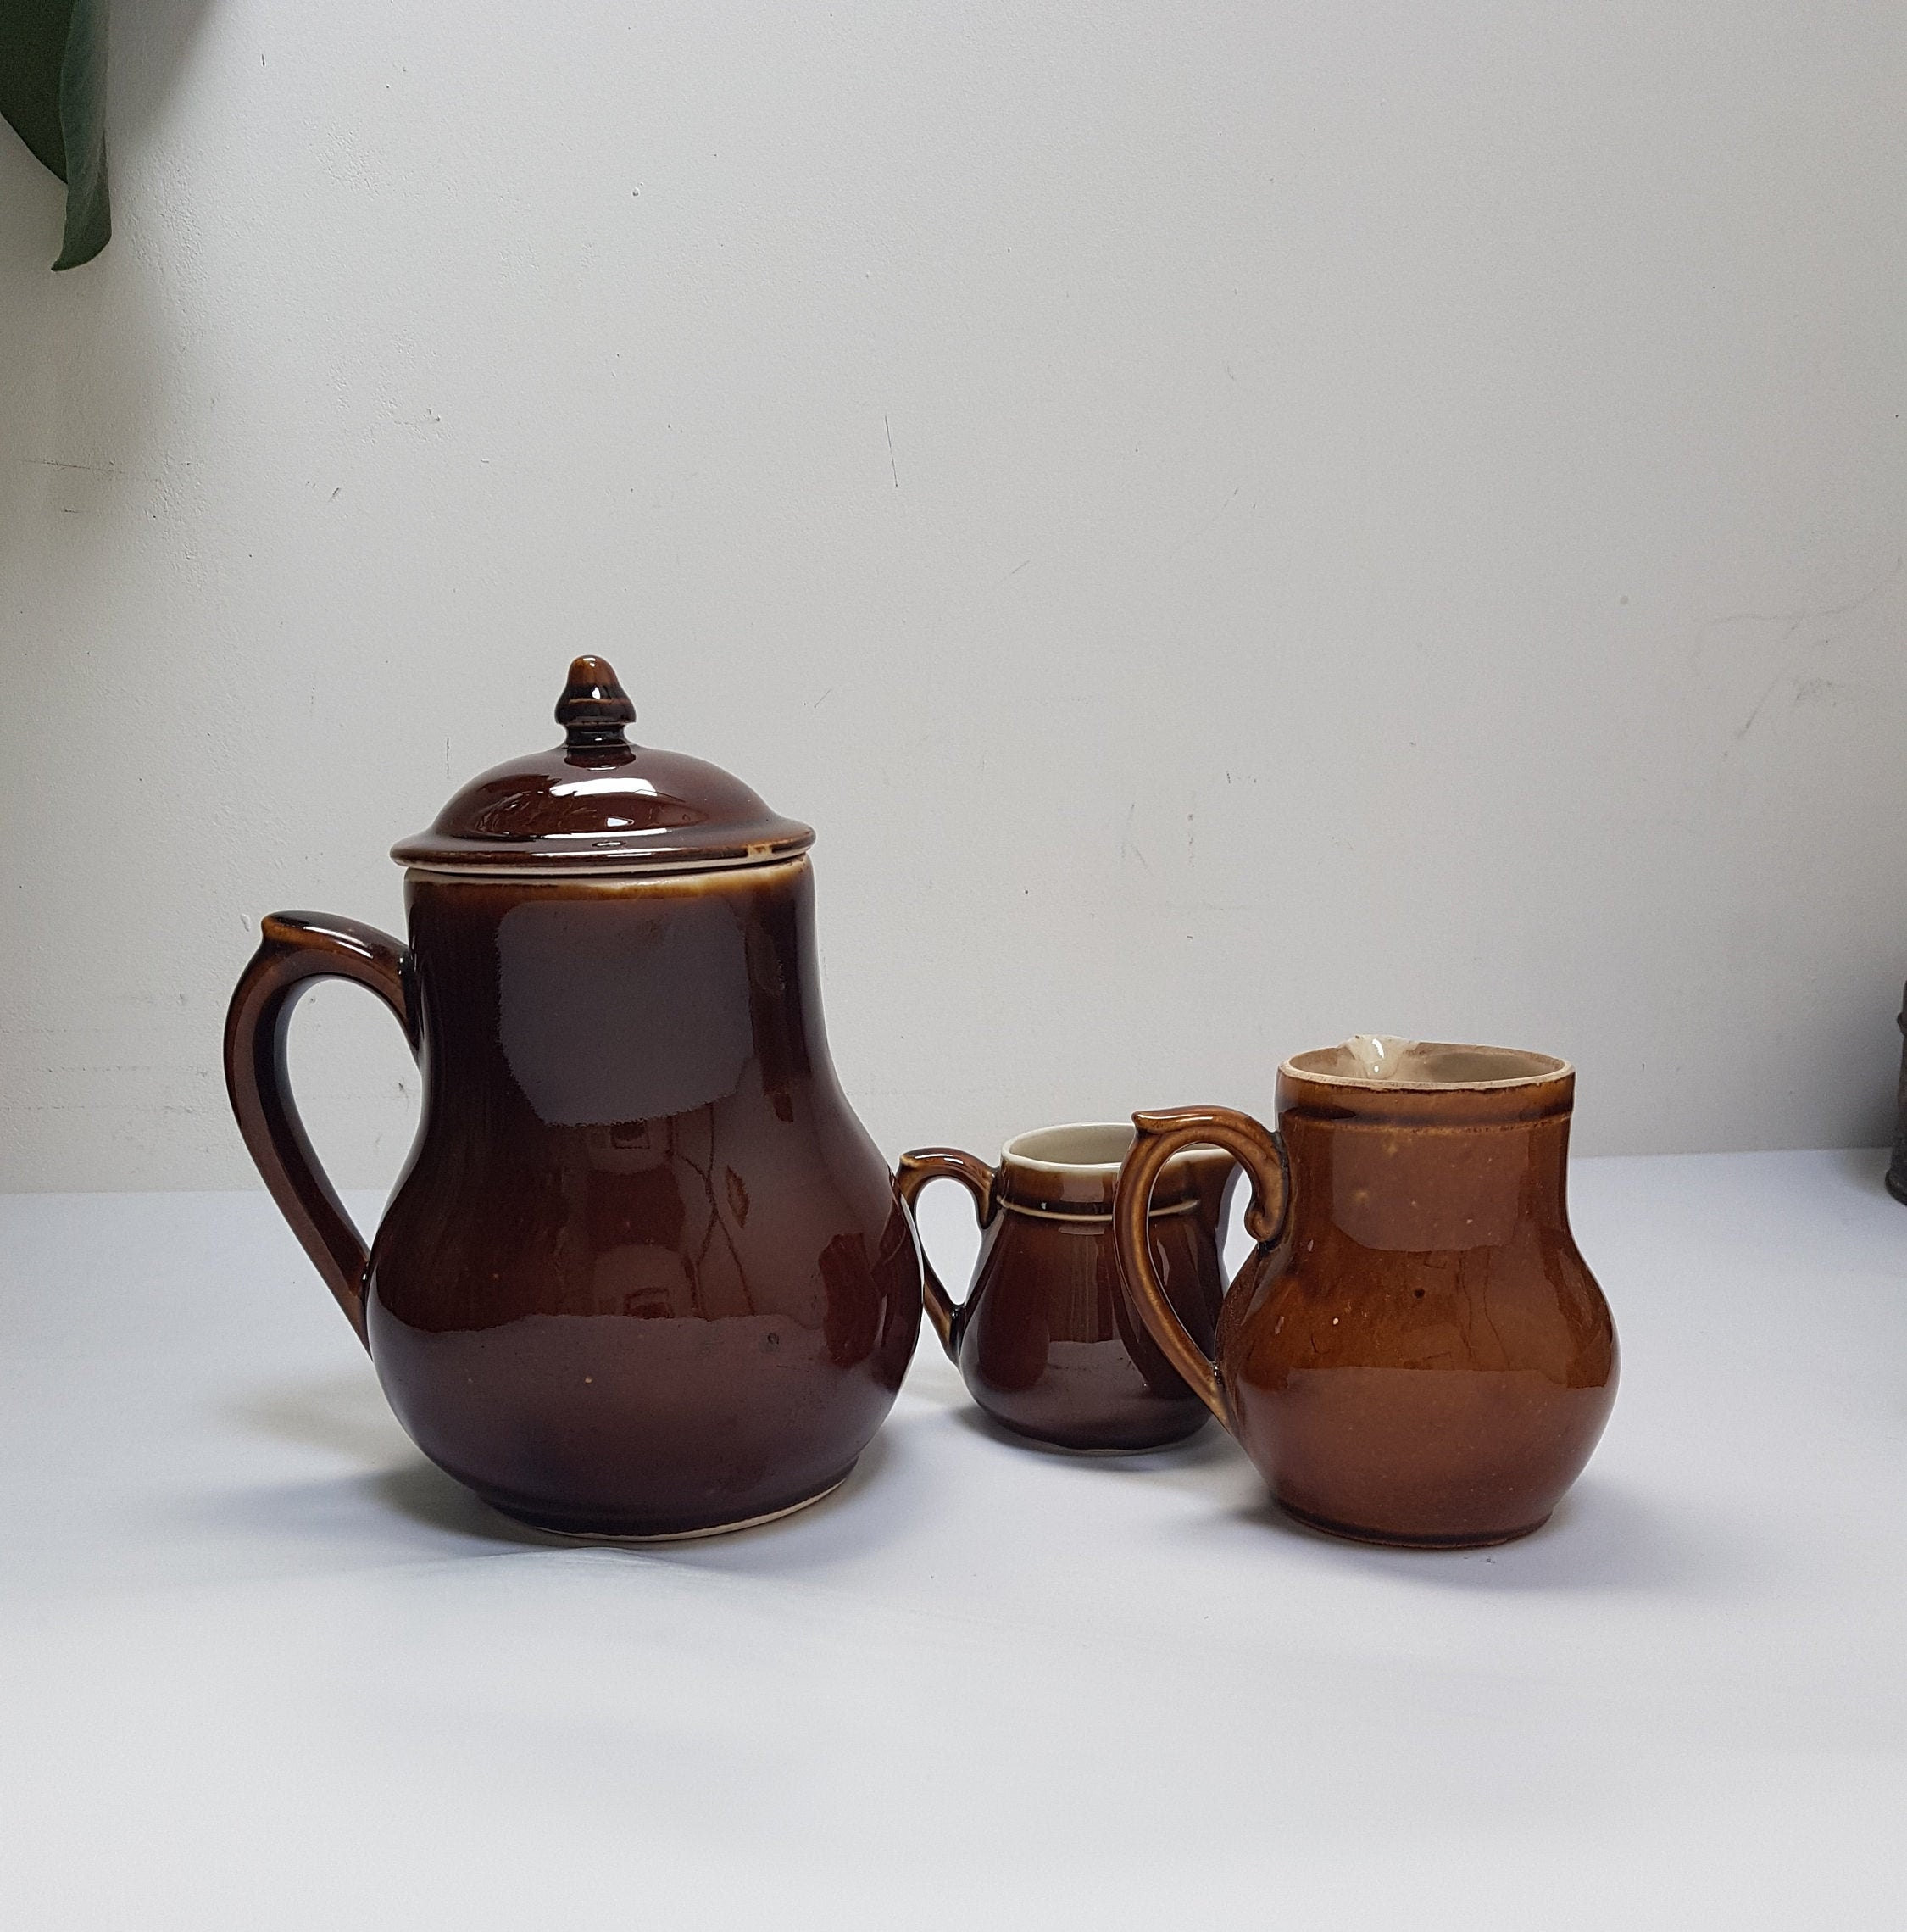 Ceramic Hot Chocolate Pot/Hernan/Housewares – igourmet